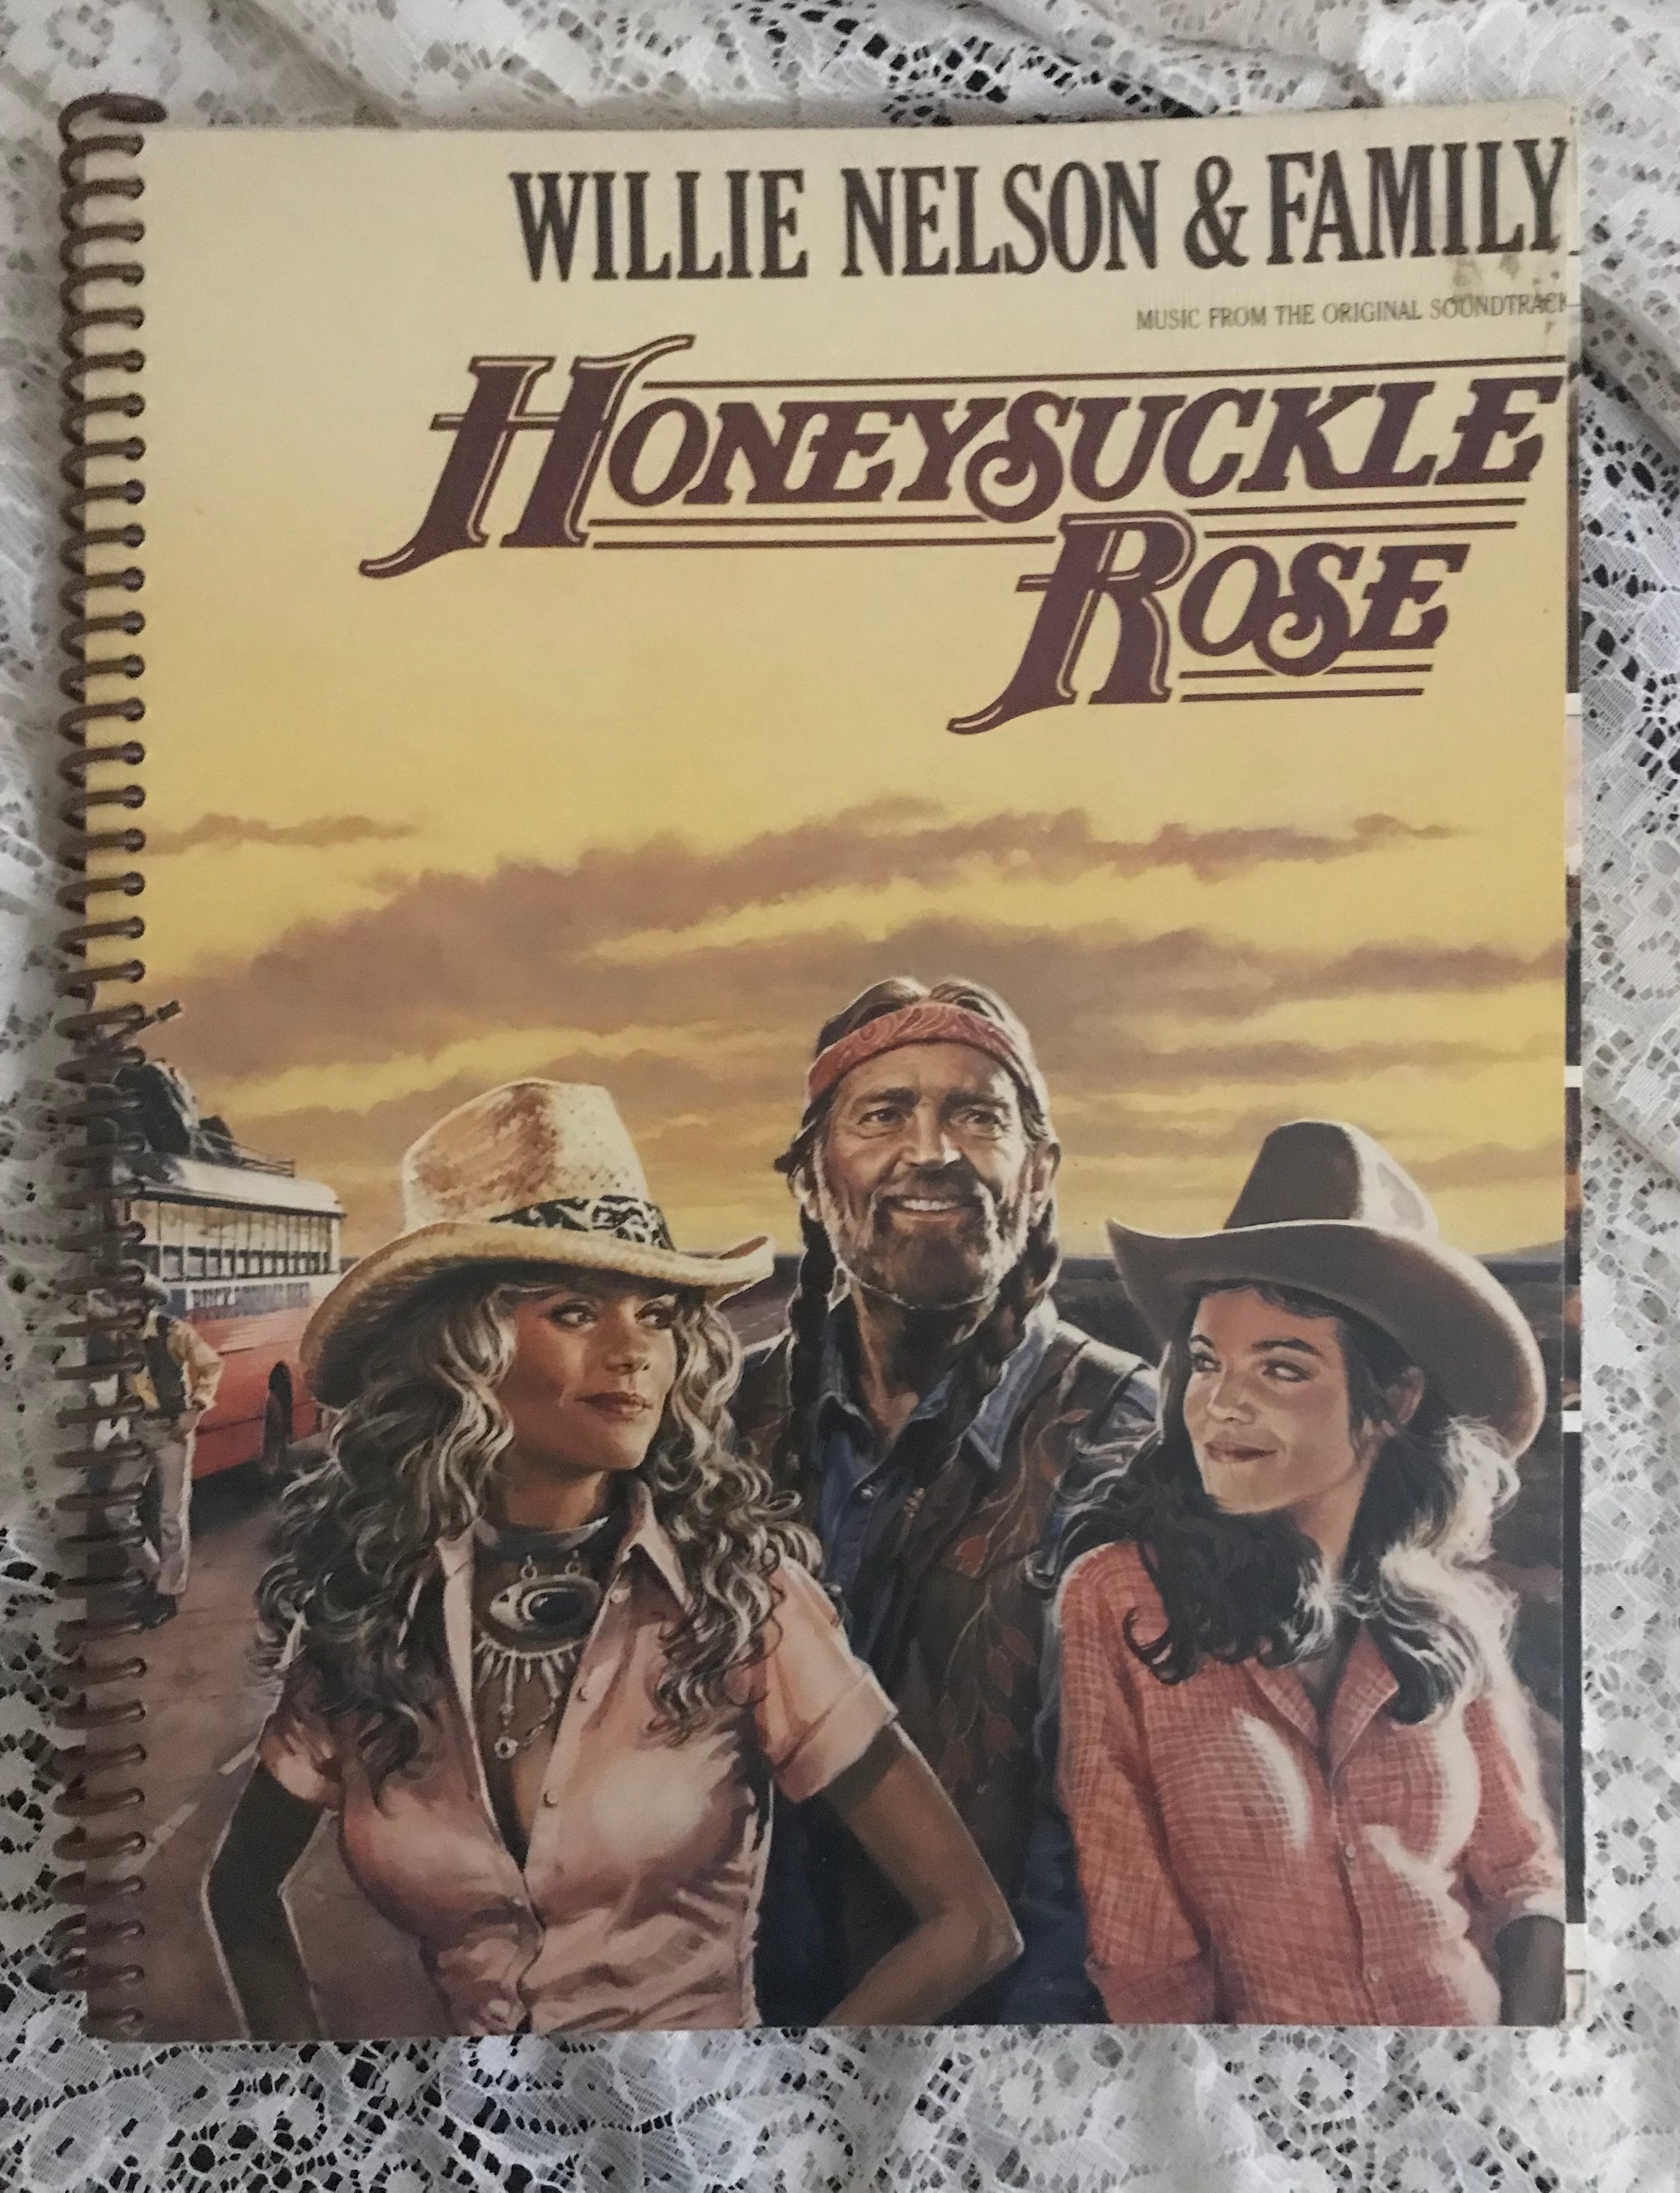 Willie Nelson Honeysuckle Rose Album Cover Notebook